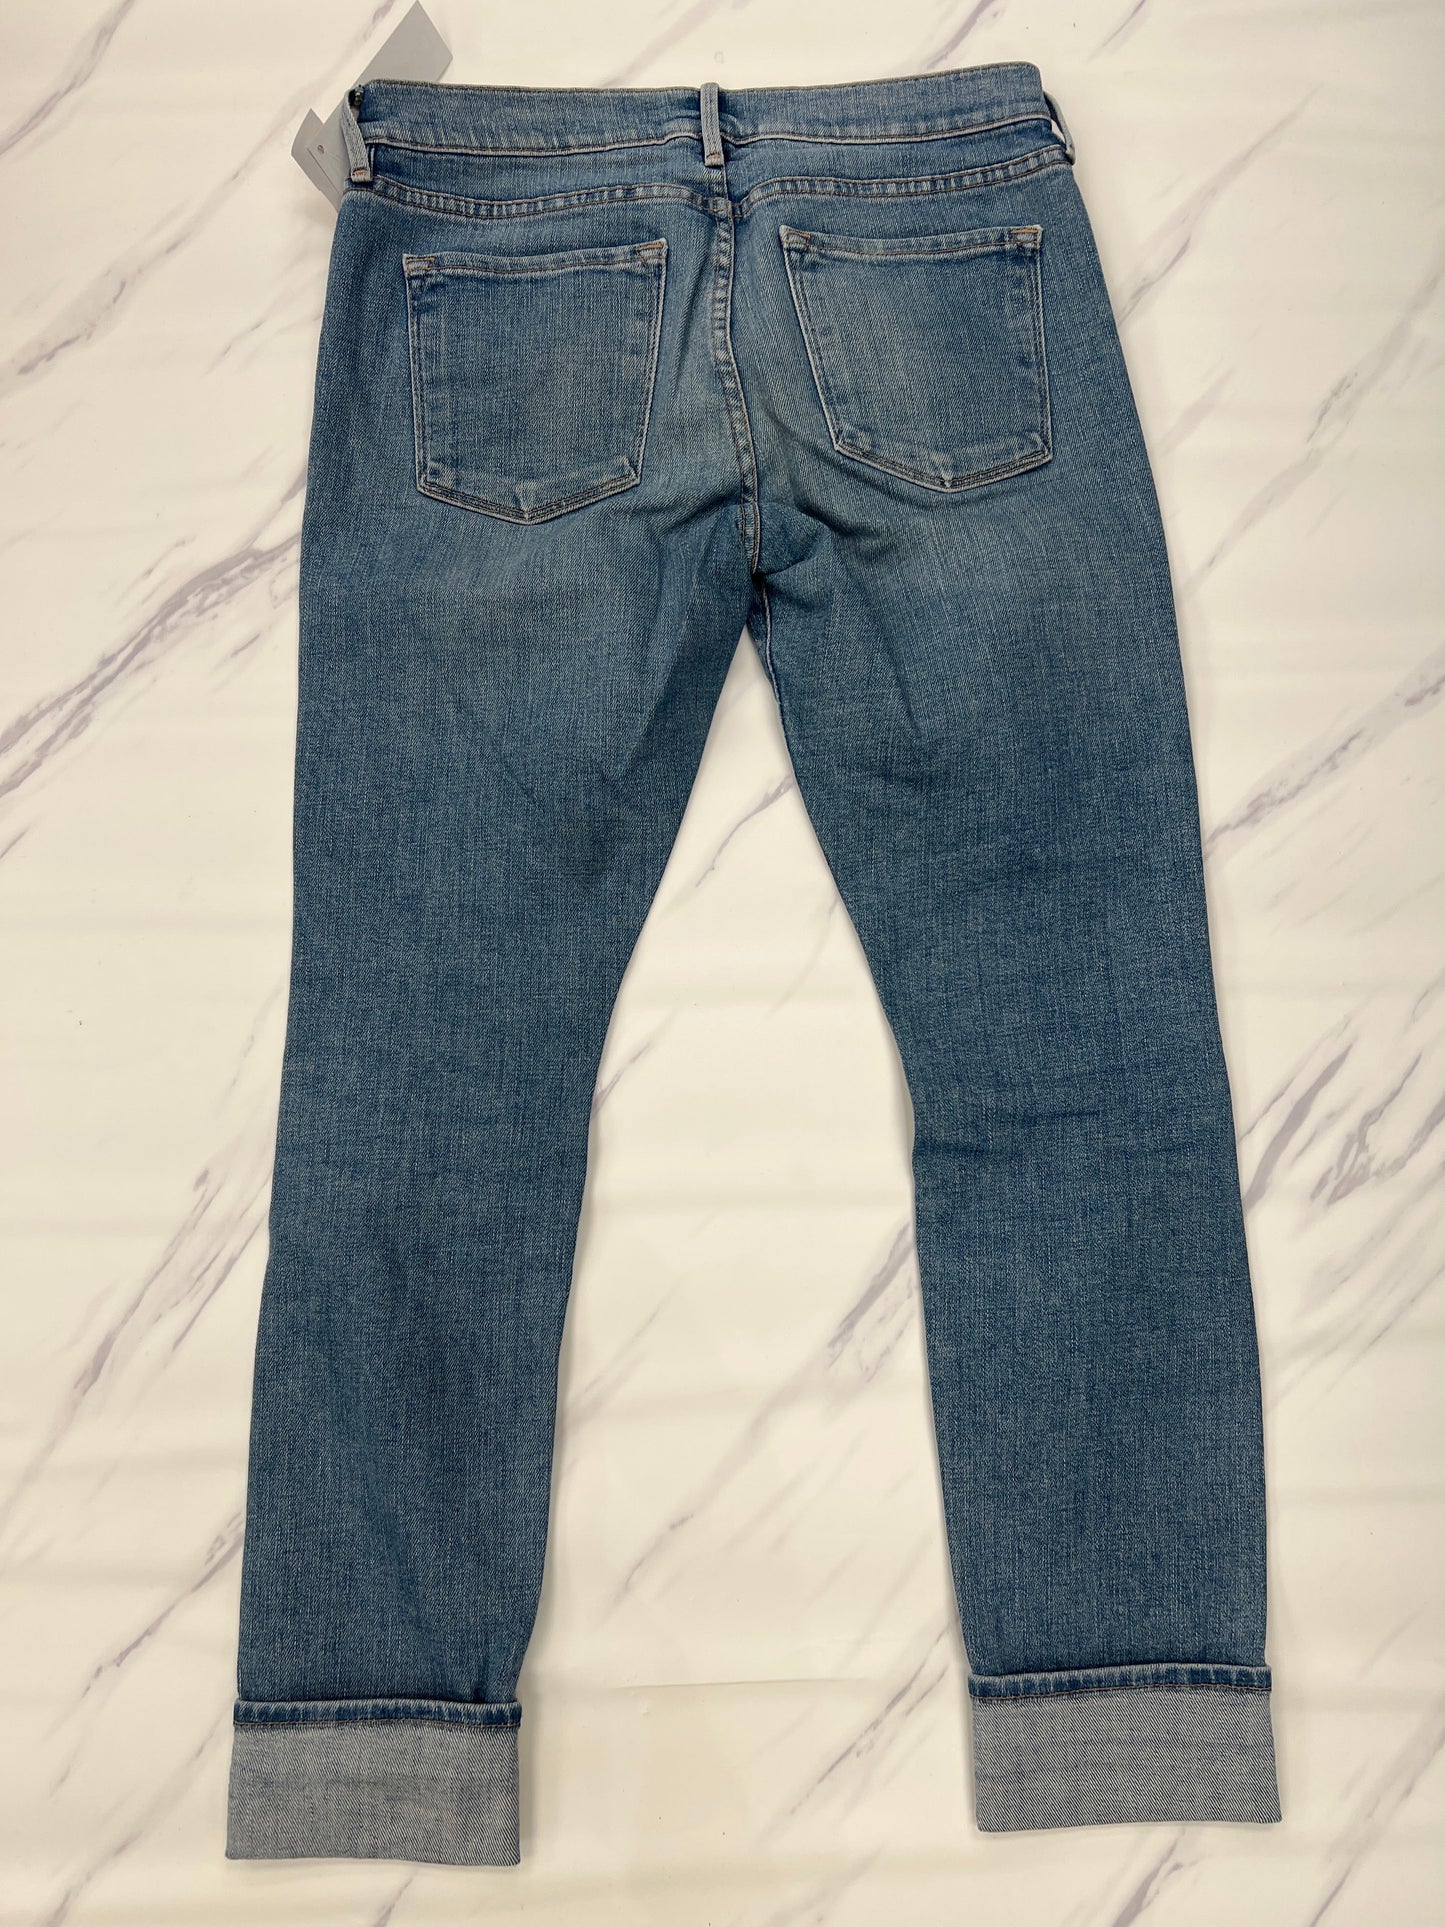 Jeans Designer Frame, Size 2